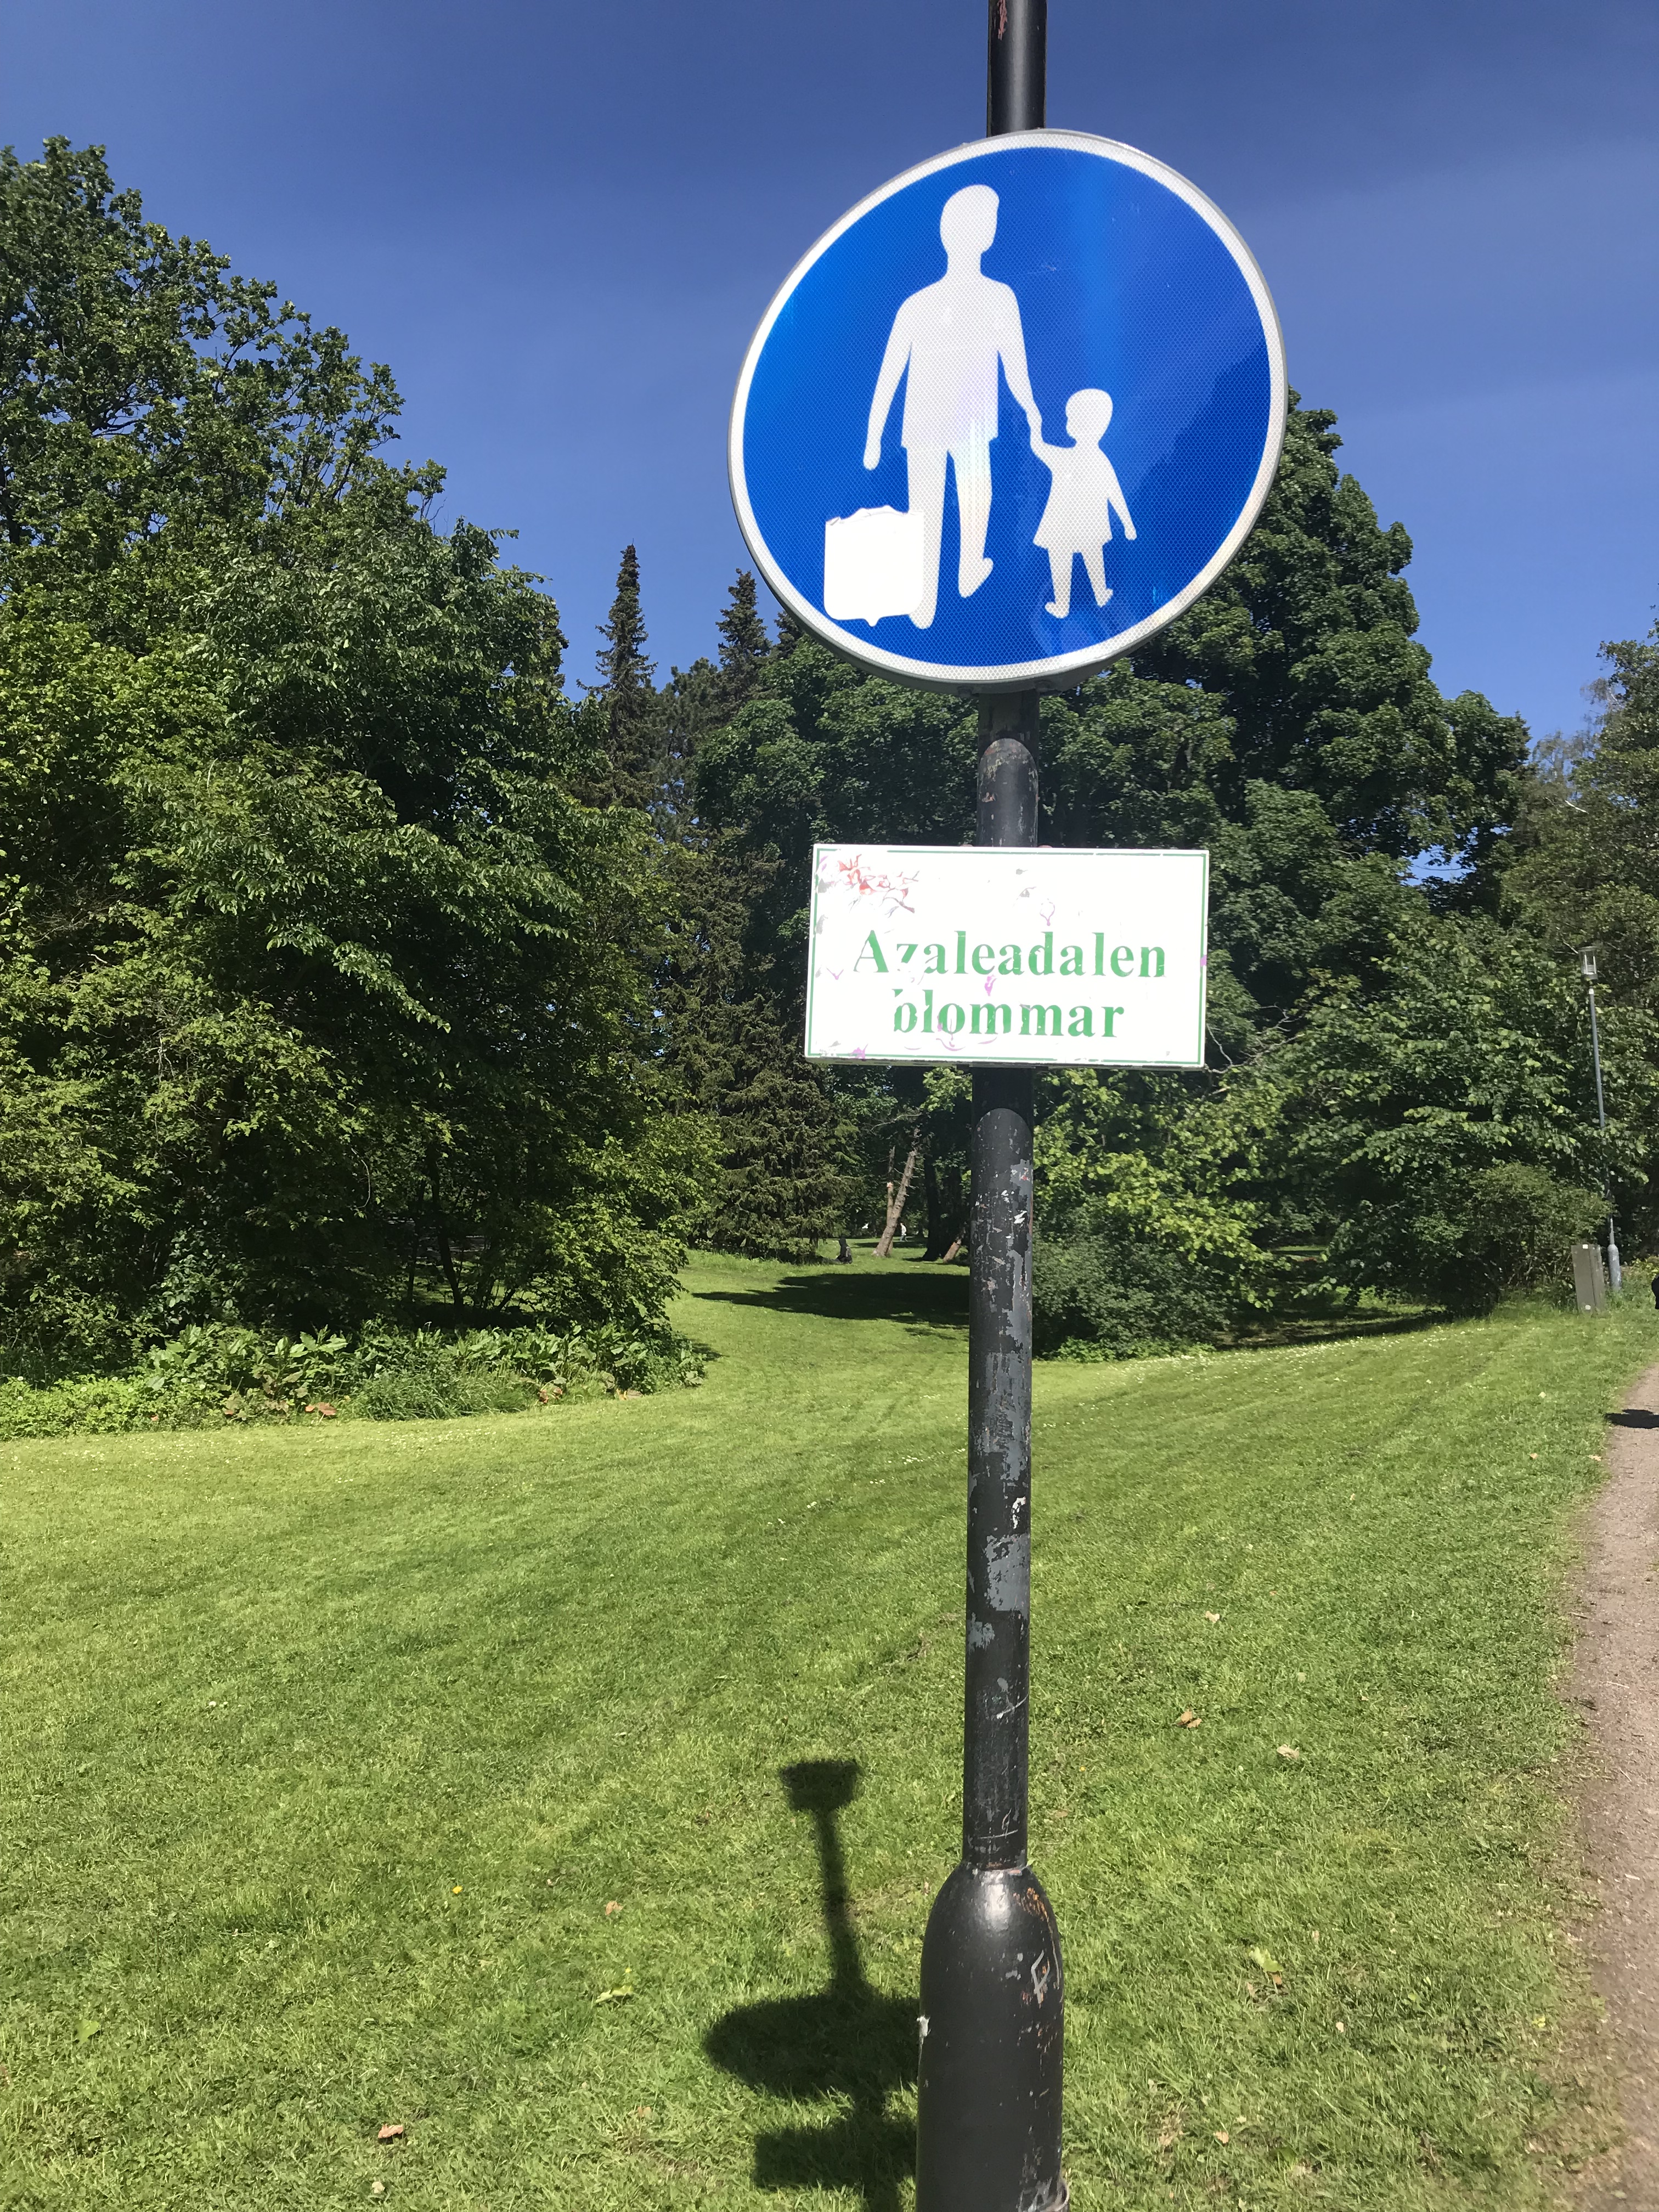 Pedestrian sign, Gothenburg, Sweden: This is a pedestrian street